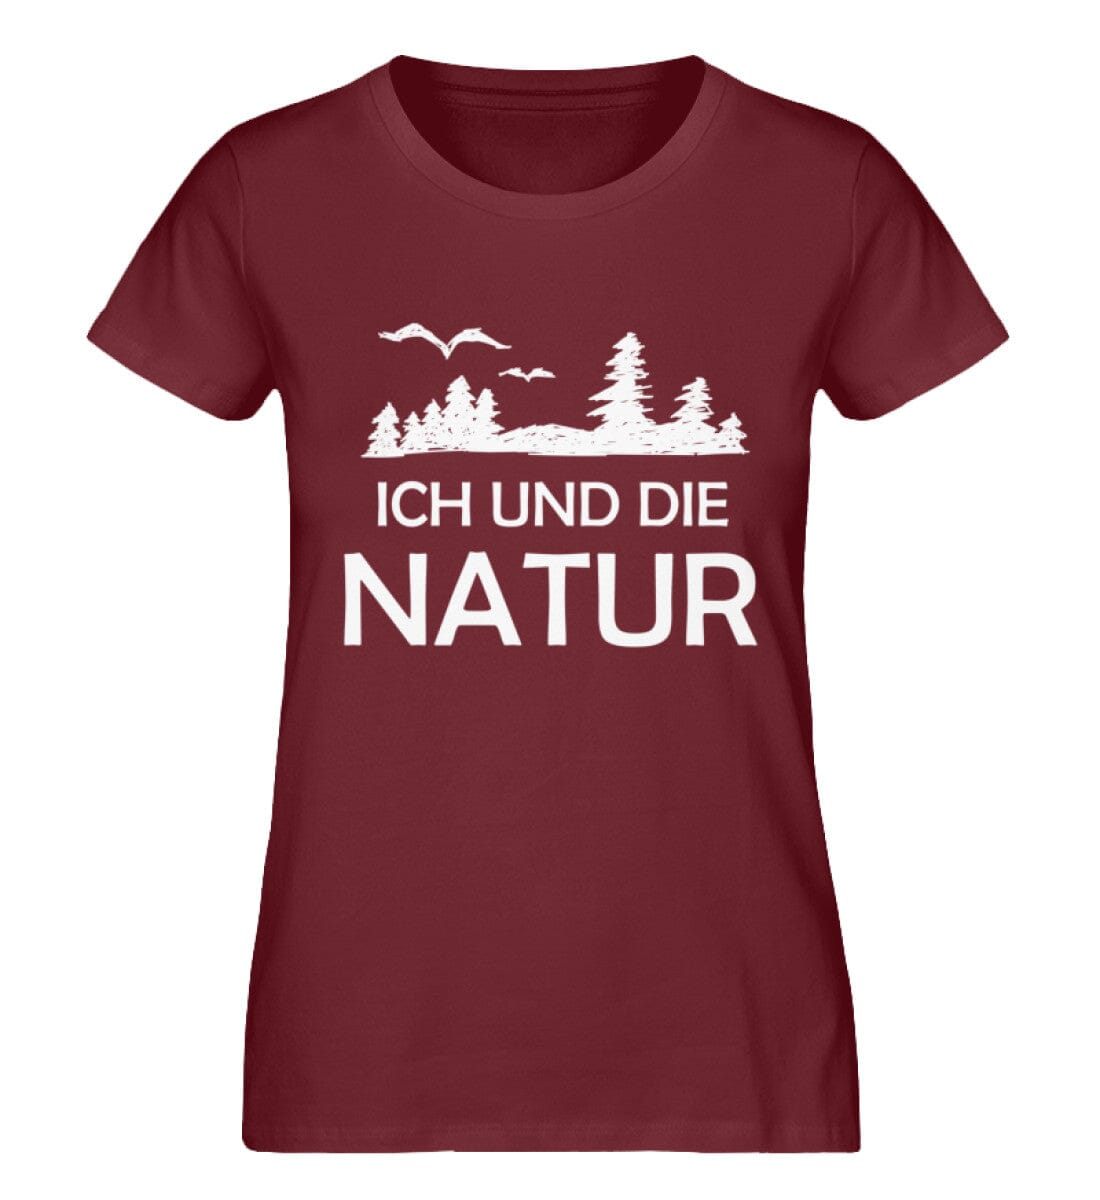 Ich und die Natur - Damen Premium Bio Shirt Burgundy S 